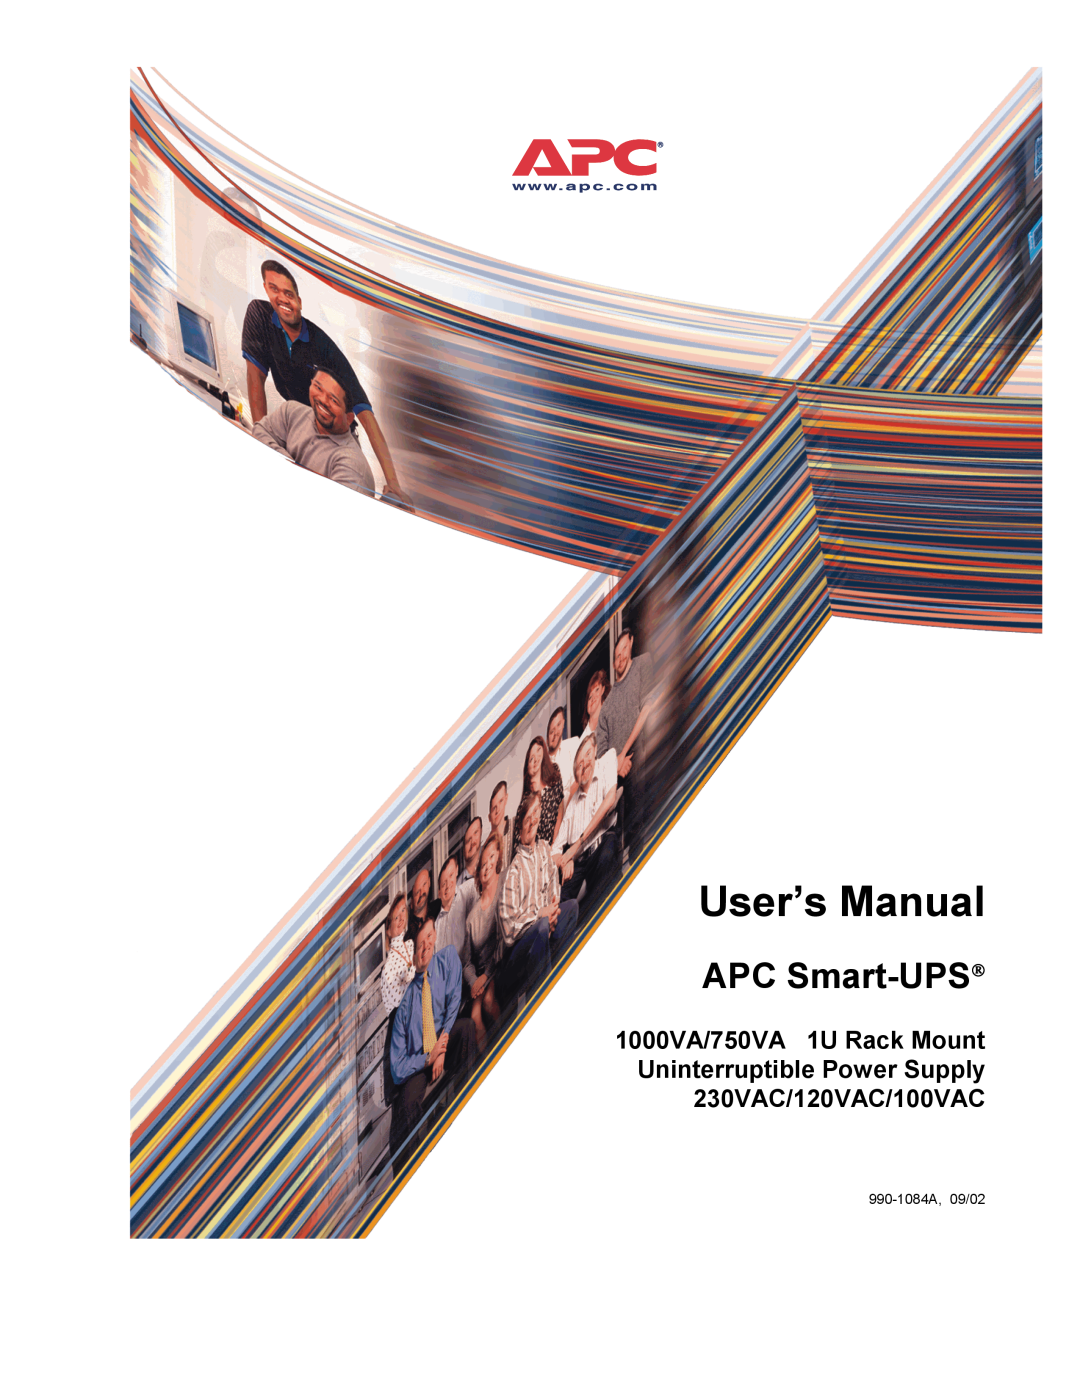 APC 1000VA, 750VA user manual User’s Manual, APC Smart-UPS, 990-1084A, 09/02 